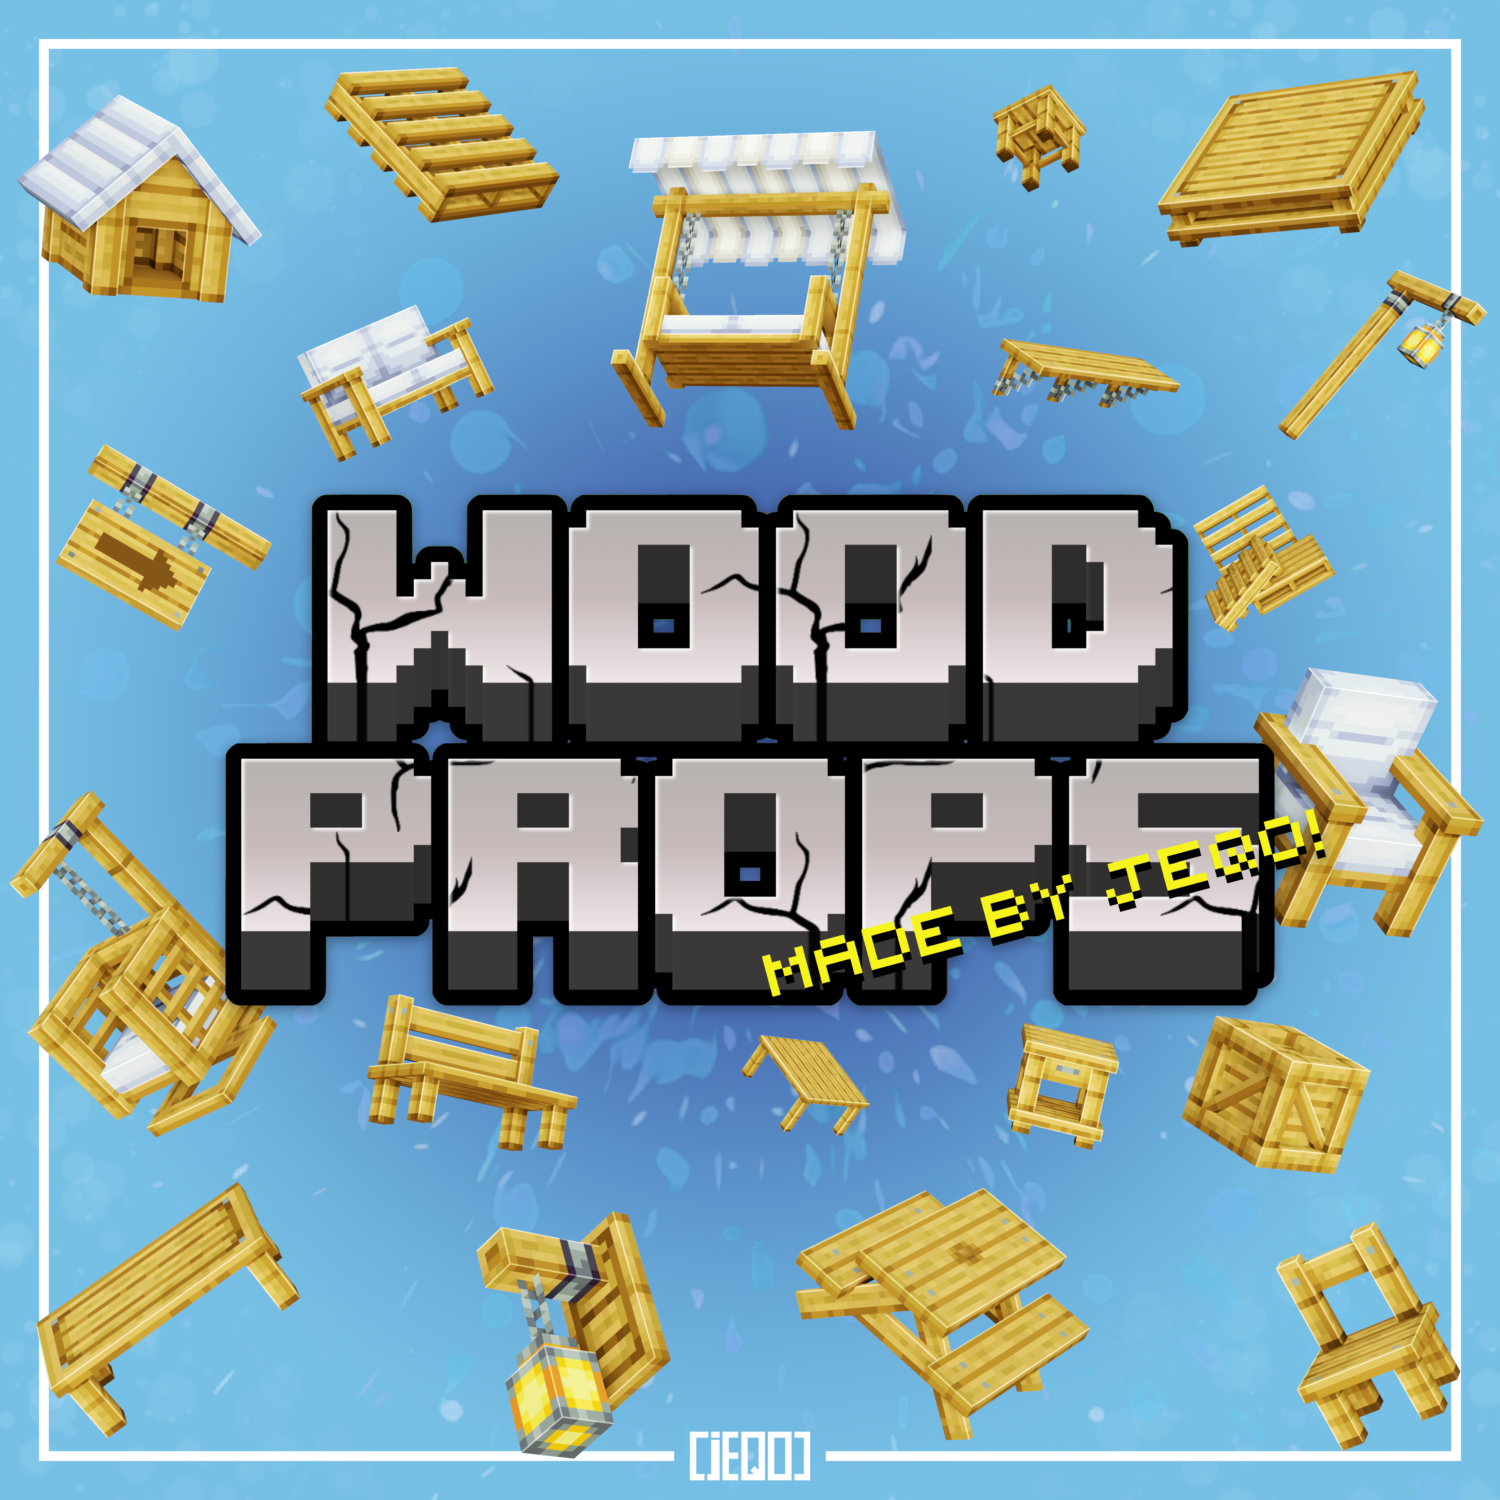 jeqos_wood_props-1500x1500 (1).png